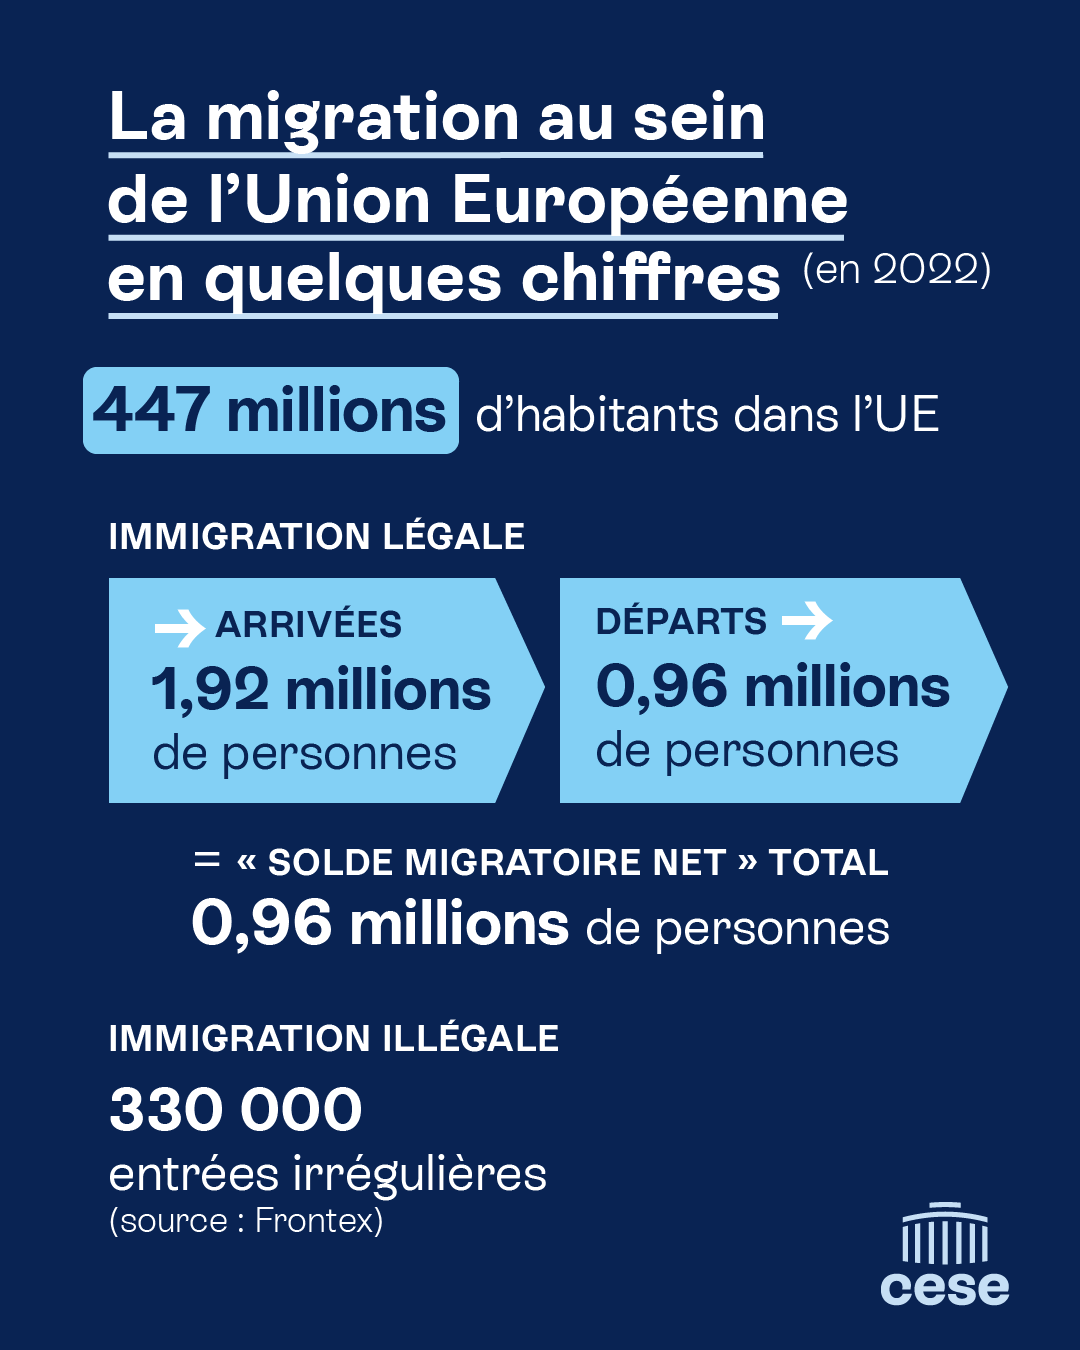 Illustration migrations et union européenne CESE